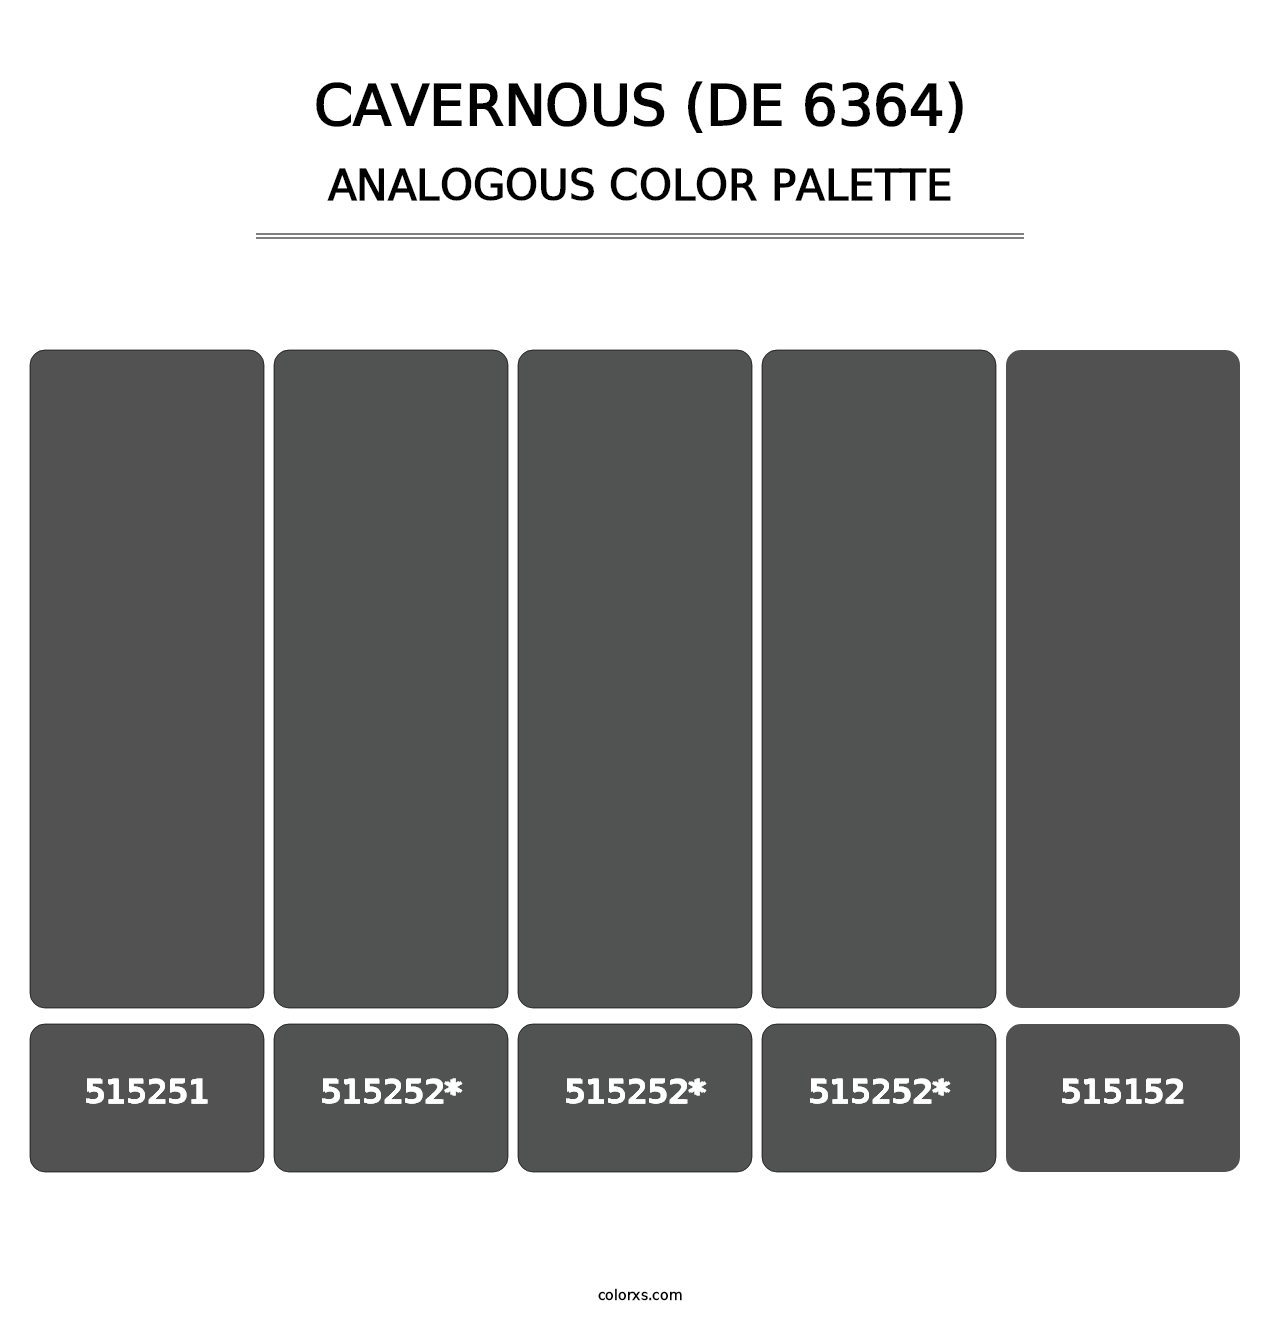 Cavernous (DE 6364) - Analogous Color Palette